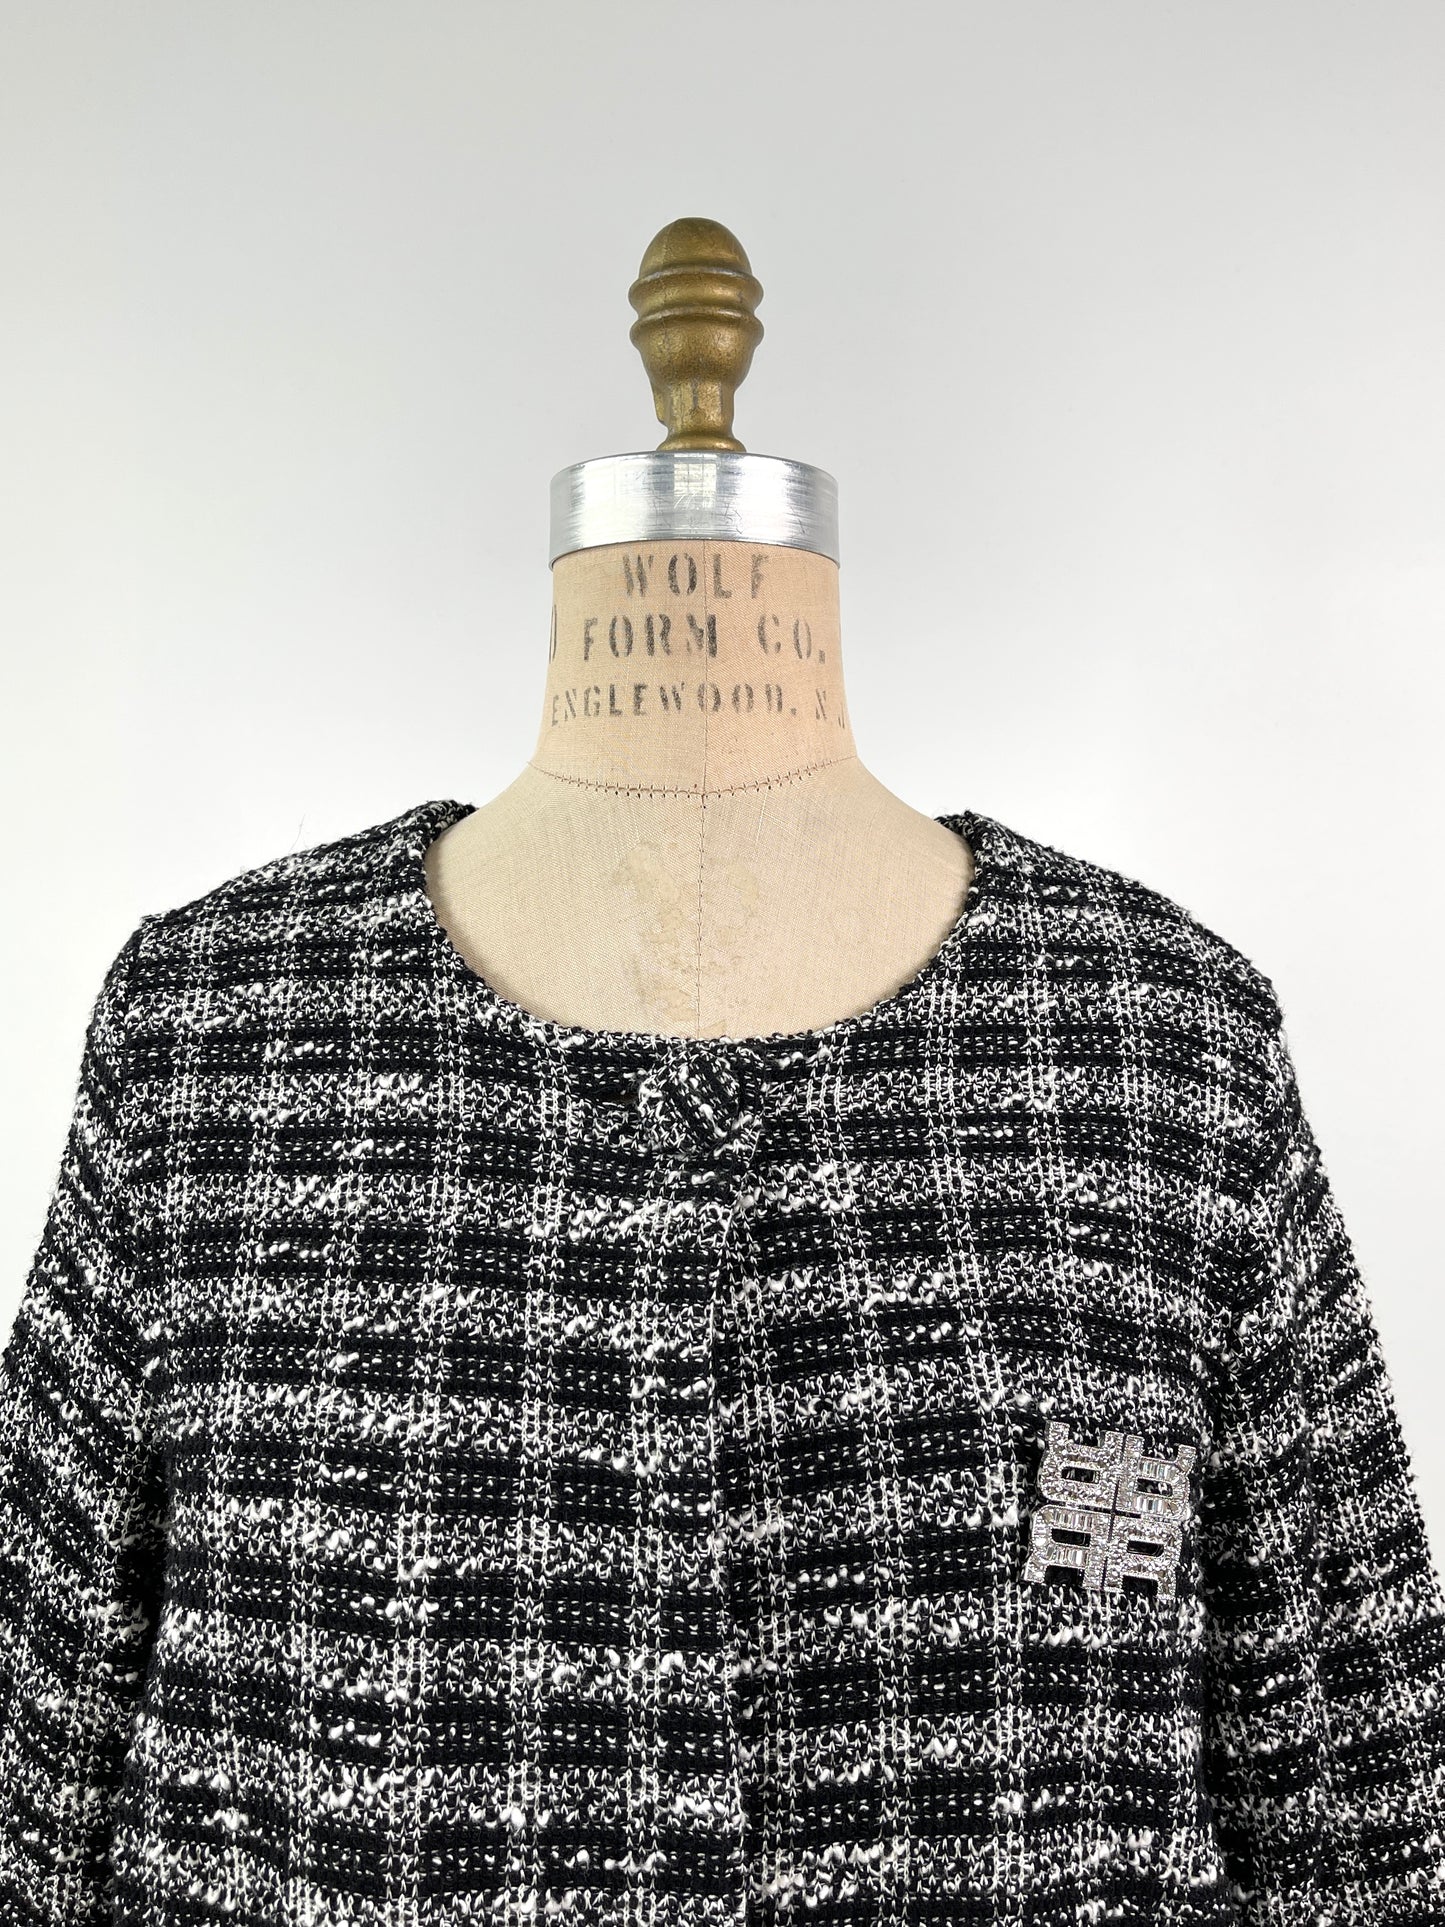 Cardigan en tricot à carreaux noir et blanc lavable (XS/S)